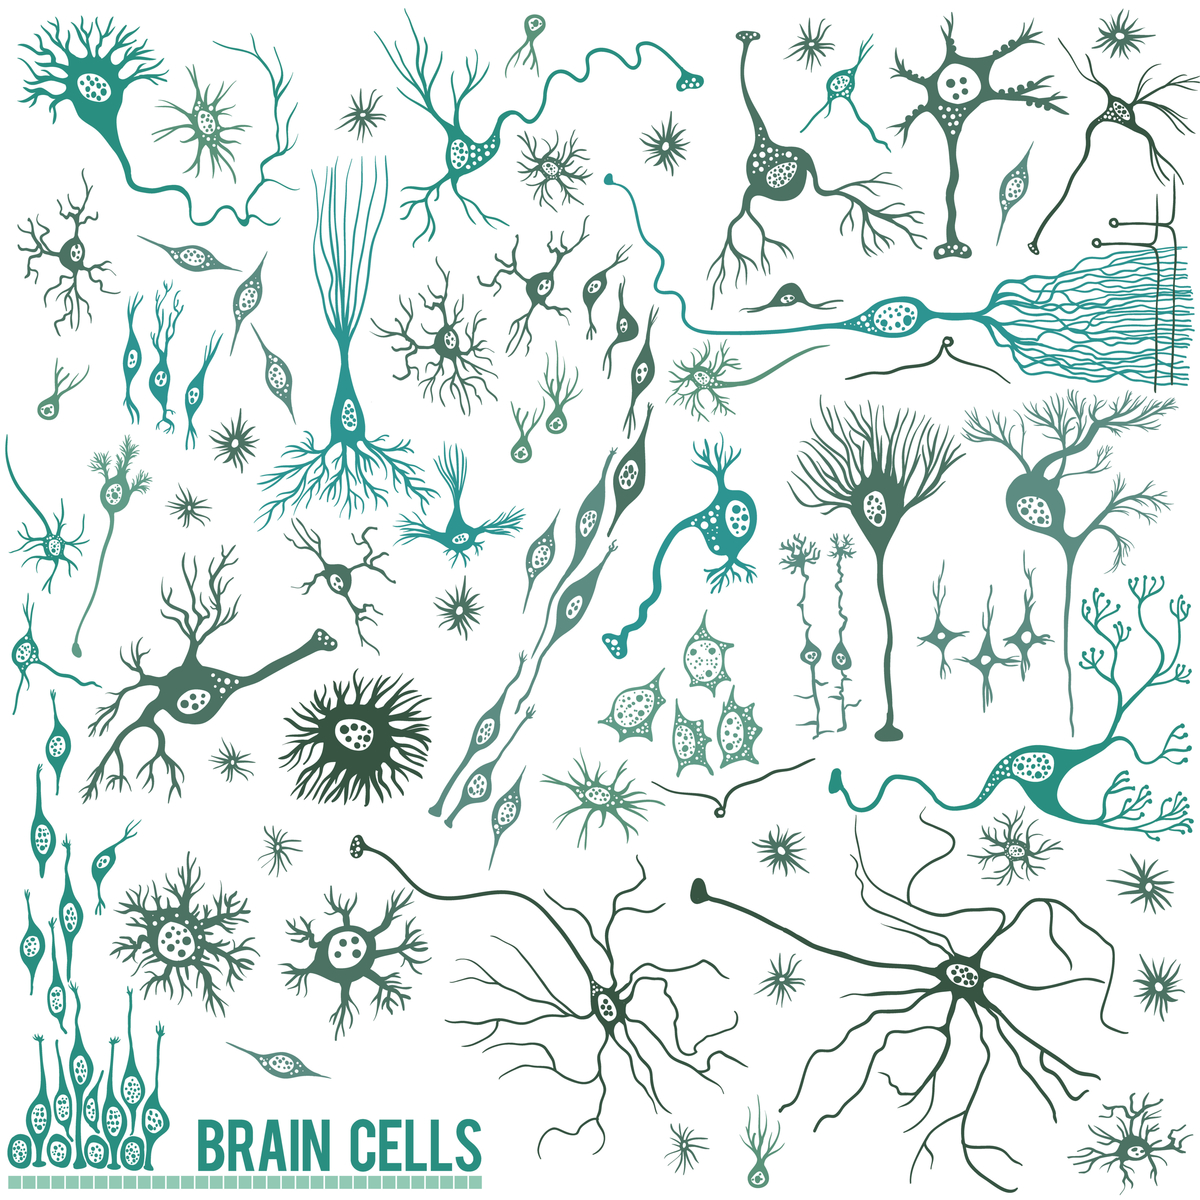 Hersencellen: er zijn veel verschillende celtypen in de hersenen; neuronen zijn er slechts één. Maar neuronen zijn toevallig wel een bijzonder kwetsbaar celtype bij de ZvH.   